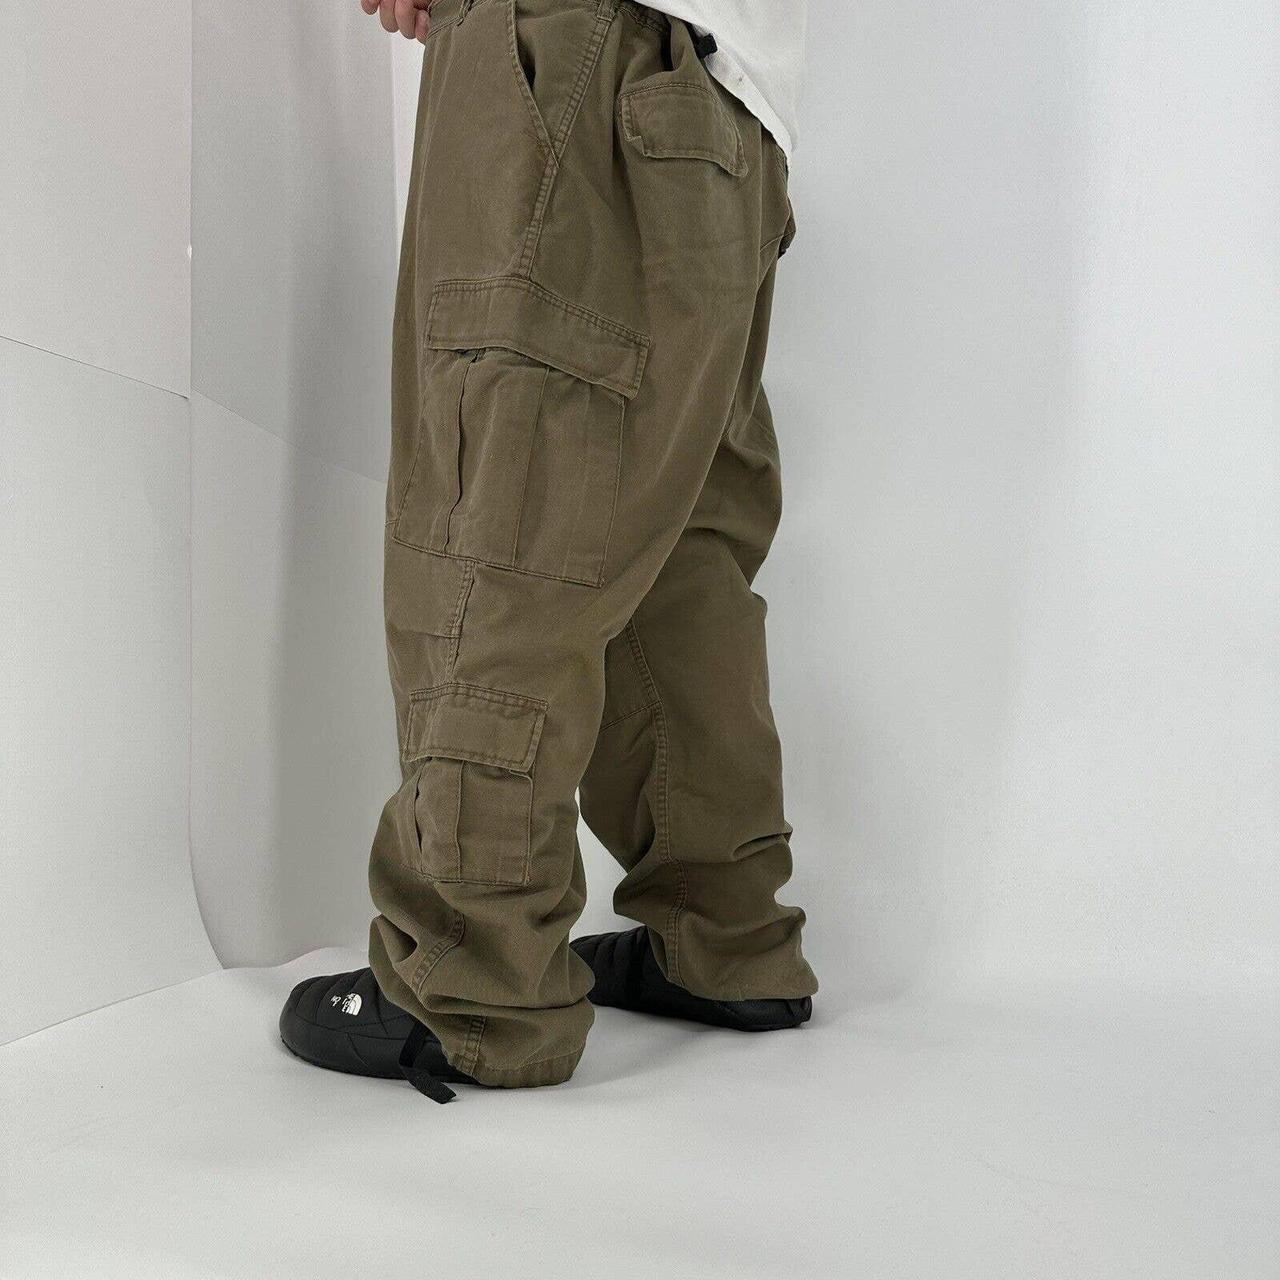 Vintage Military Cargo Pants Quad Pocket Baggy Fit... - Depop